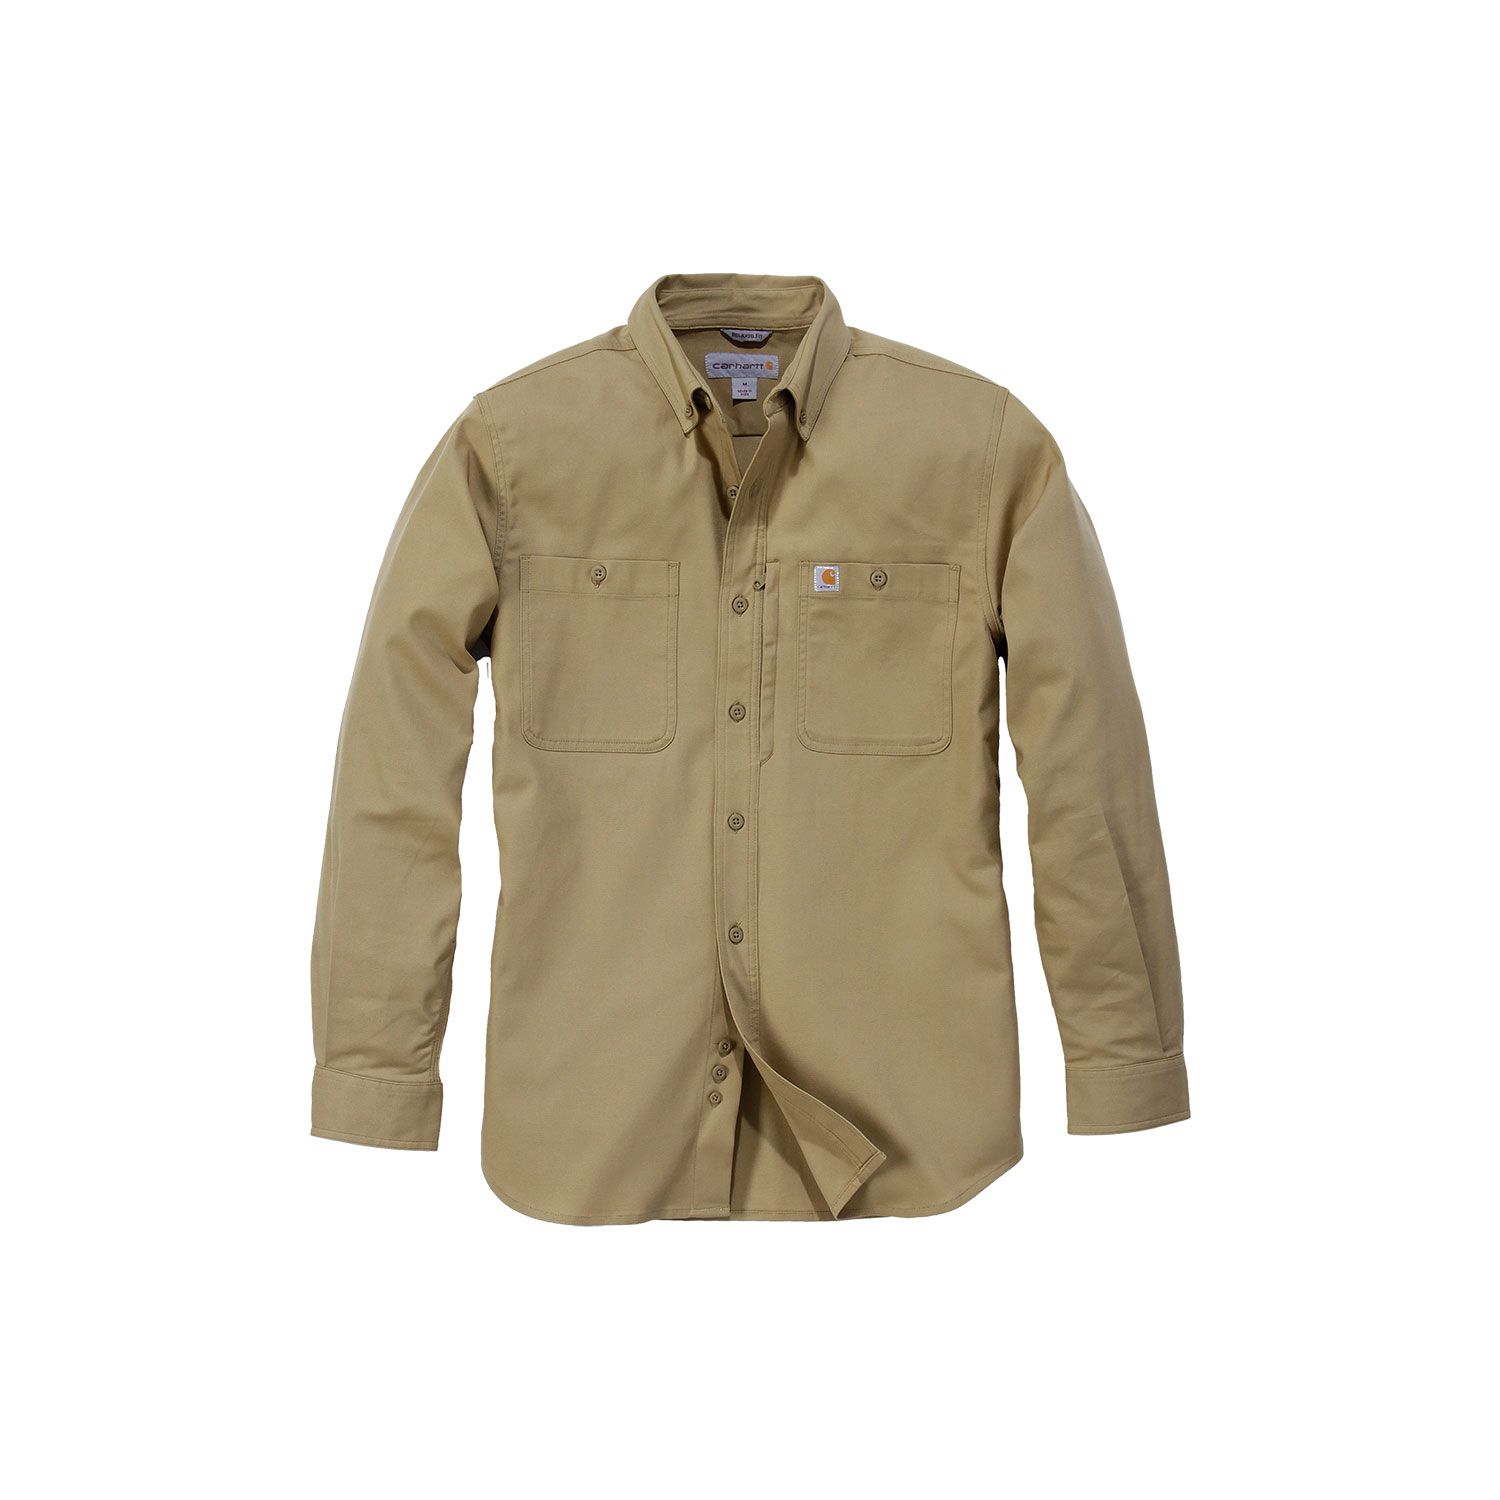 Carhartt Rugged Professional long sleeve shirt | navy blue | XL ...